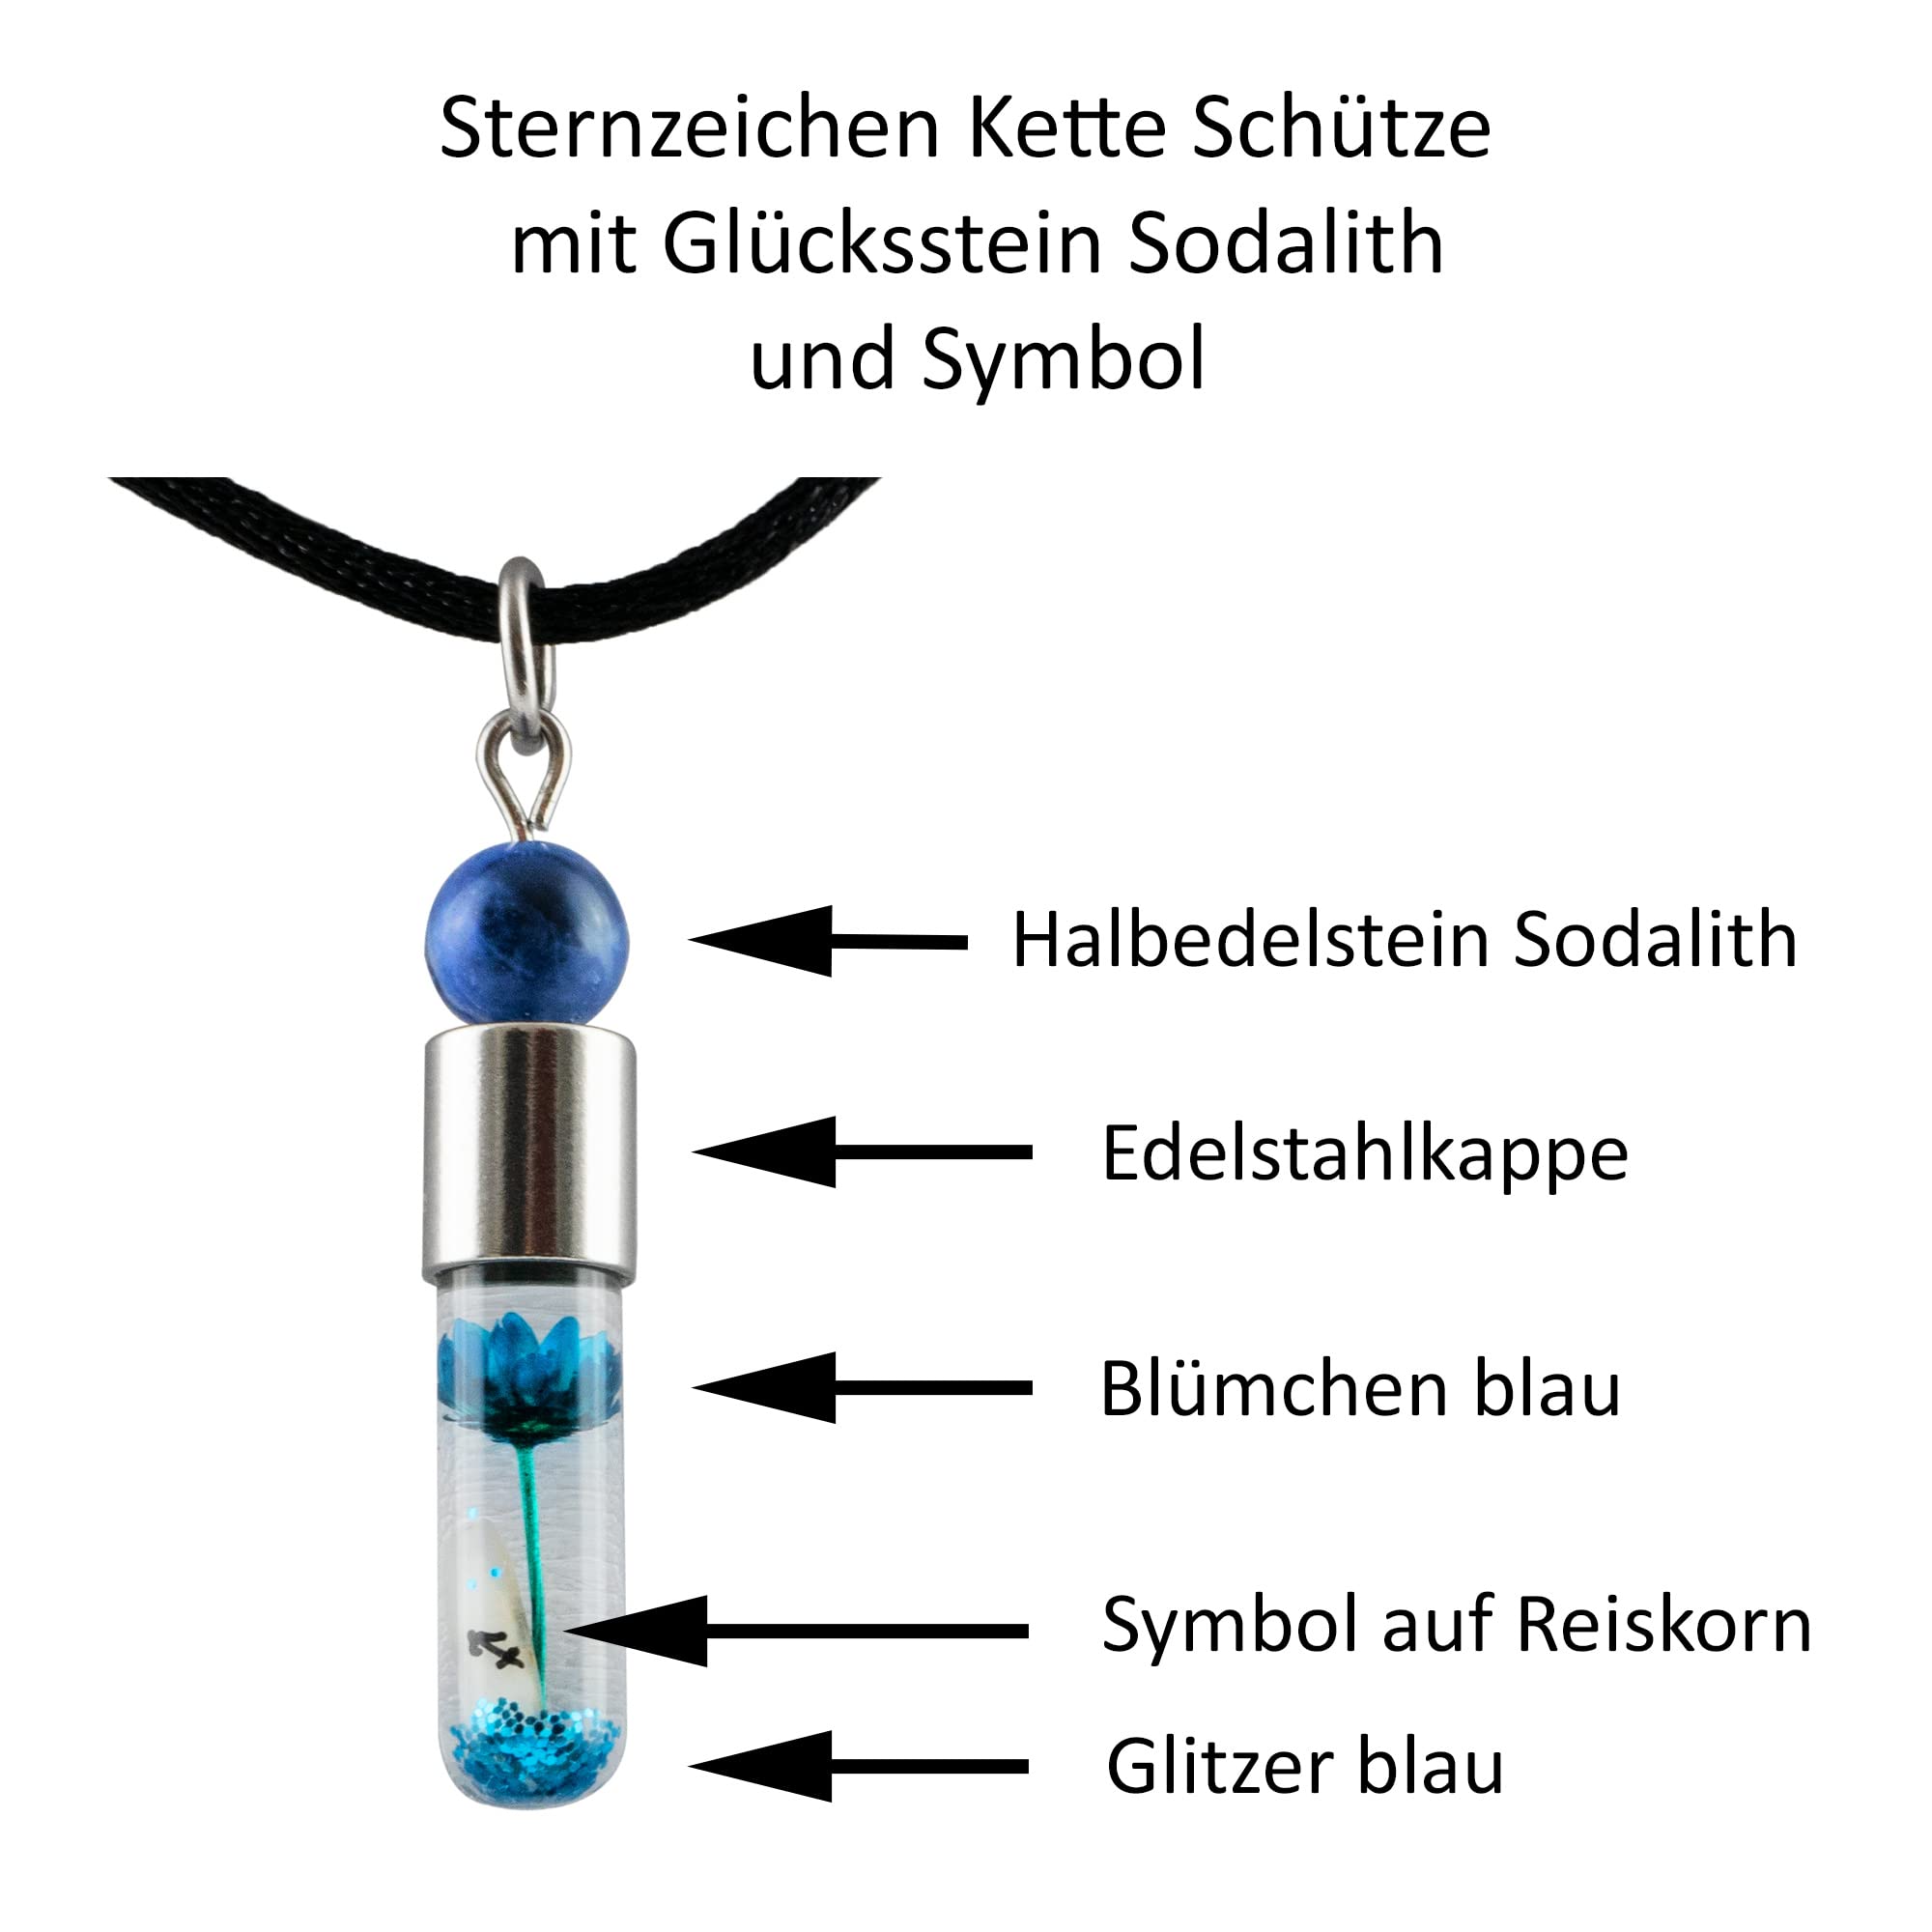 Sternzeichen Schütze, 23. November - 21. Dezember, Halskette mit Glückstein Sodalith und Sternzeichensymbol